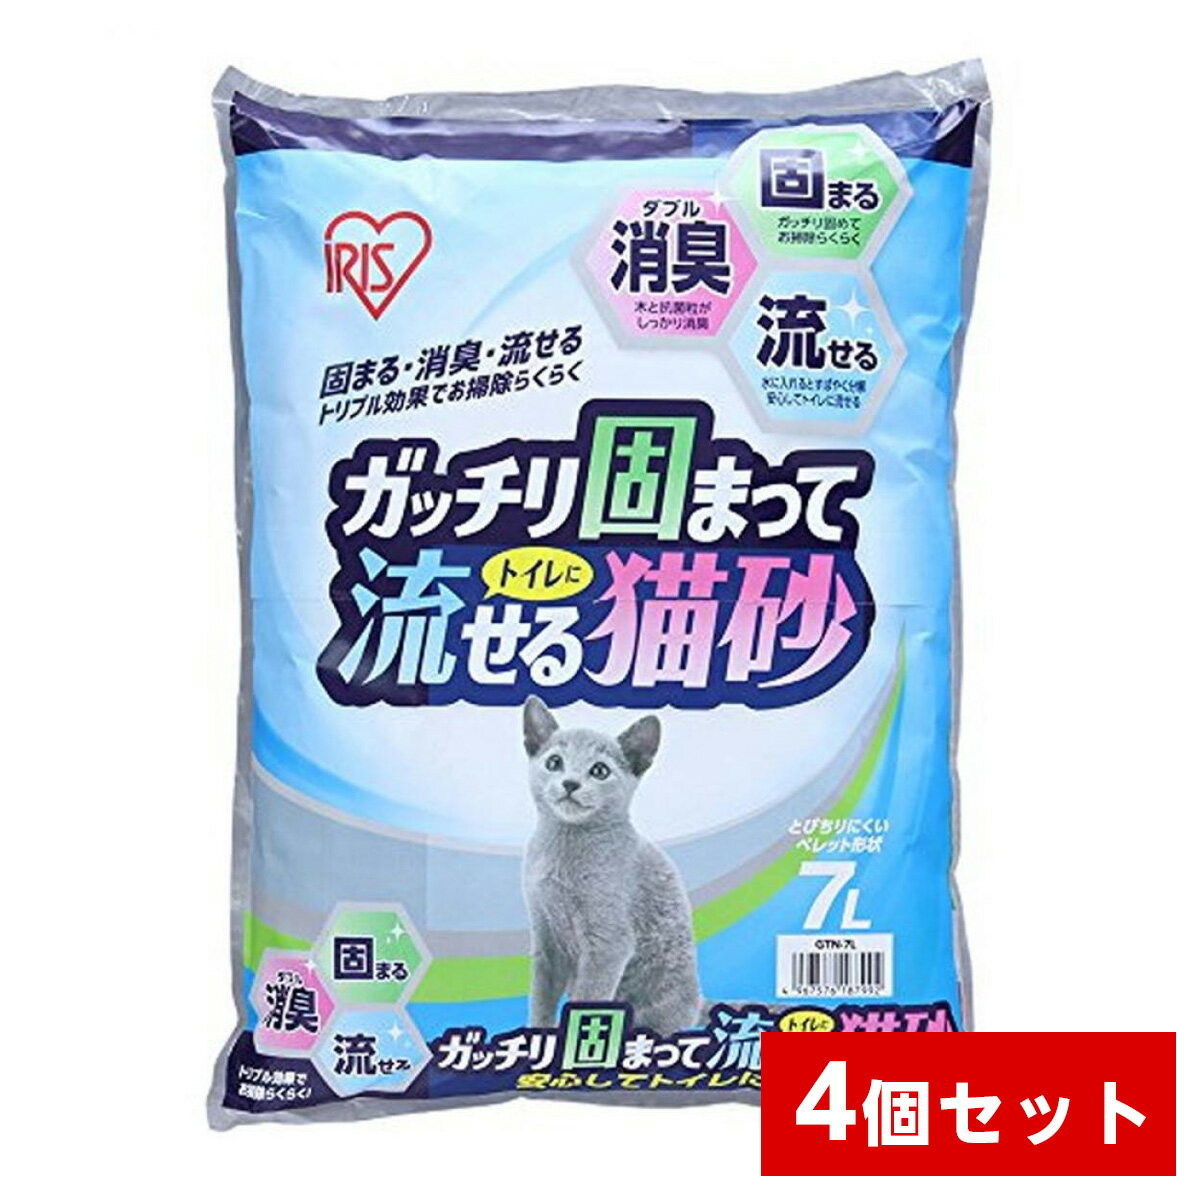 【まとめ買い】アイリスオーヤマ ガッチリ固まってトイレに流せる猫砂 7L×4袋セット　GTN-7L 猫用 トイレ 木系 消臭 1